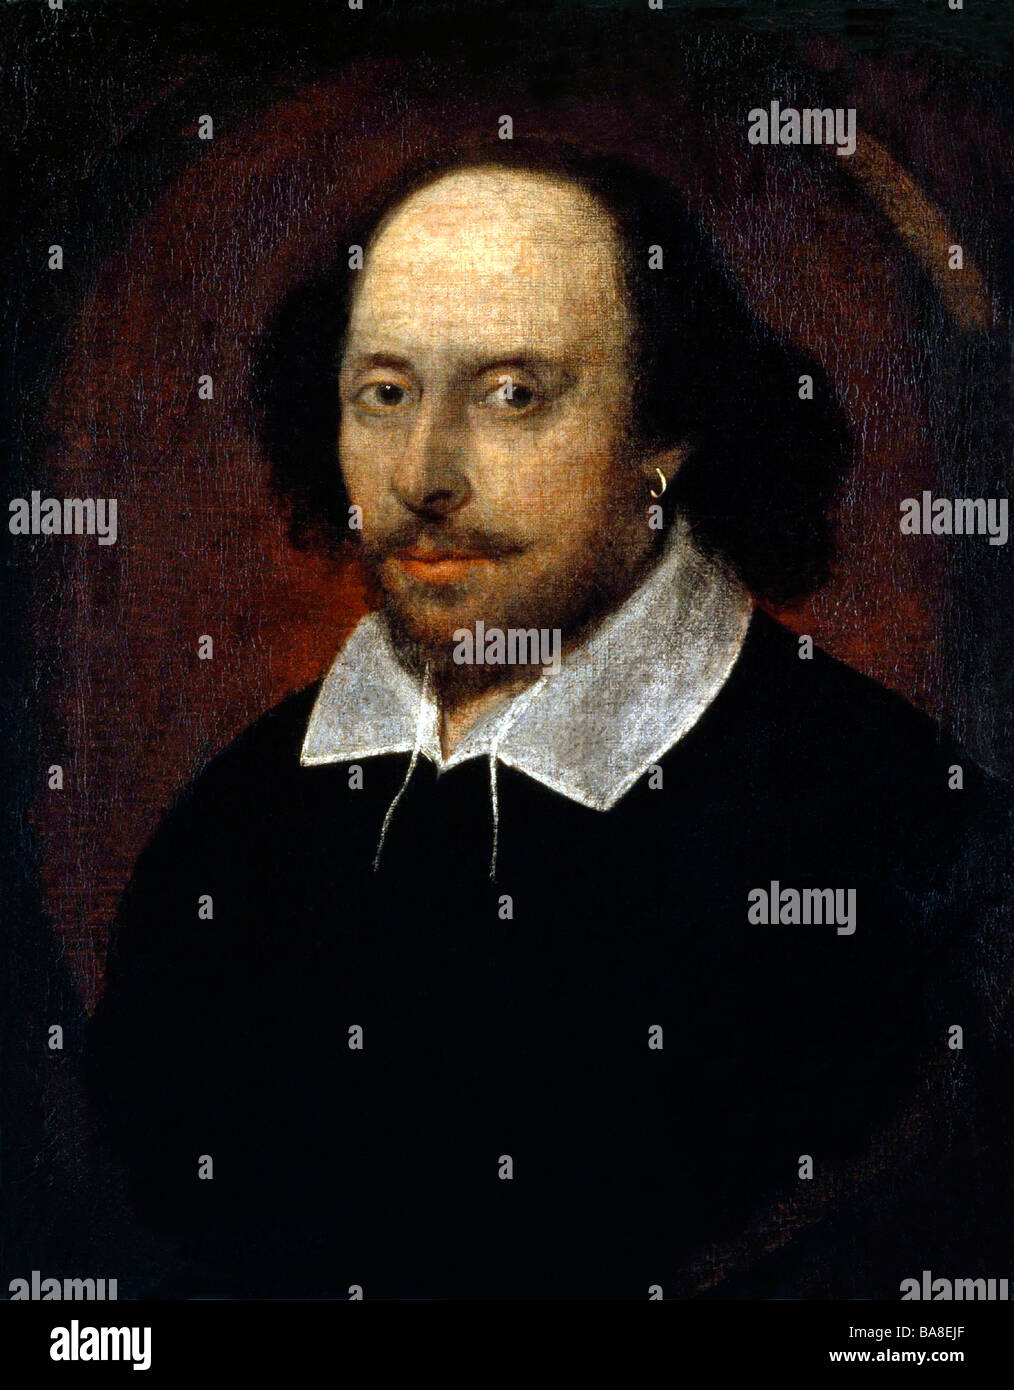 Ritratto di autore inglese, drammaturgo William Shakespeare. Foto Stock